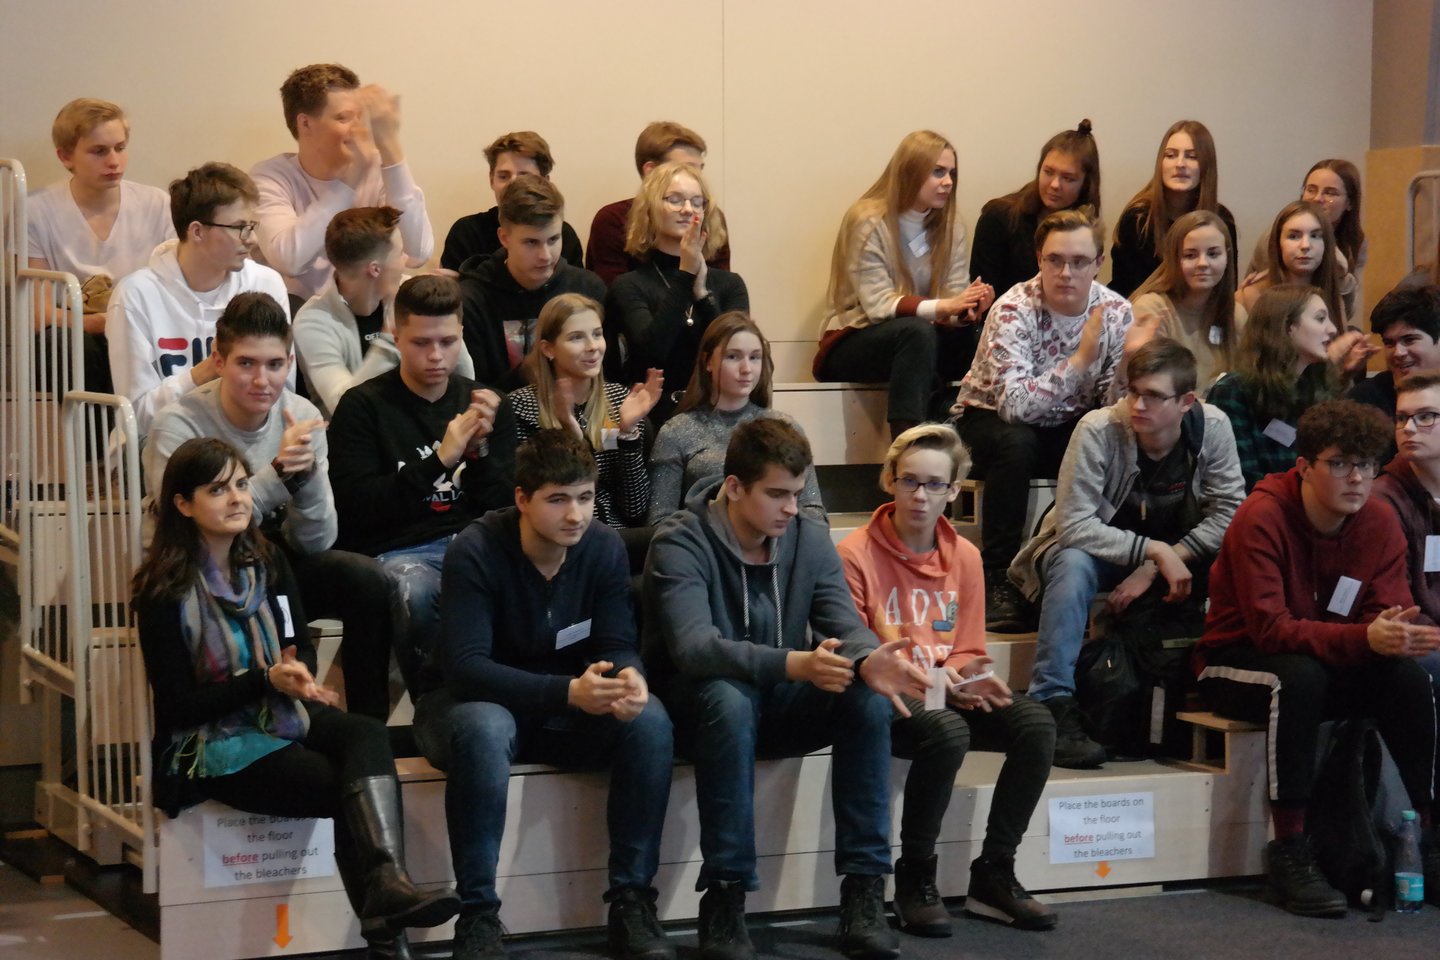 Tarptautinė Amerikos mokykla Vilniuje (AISV) sukvietė 11-12 klasių moksleivius iš kitų Lietuvos mokyklų, dėstančių pagal Tarptautinio bakalaureato diplomo programą (IB DP), į konferenciją. <br> AISV nuotr.